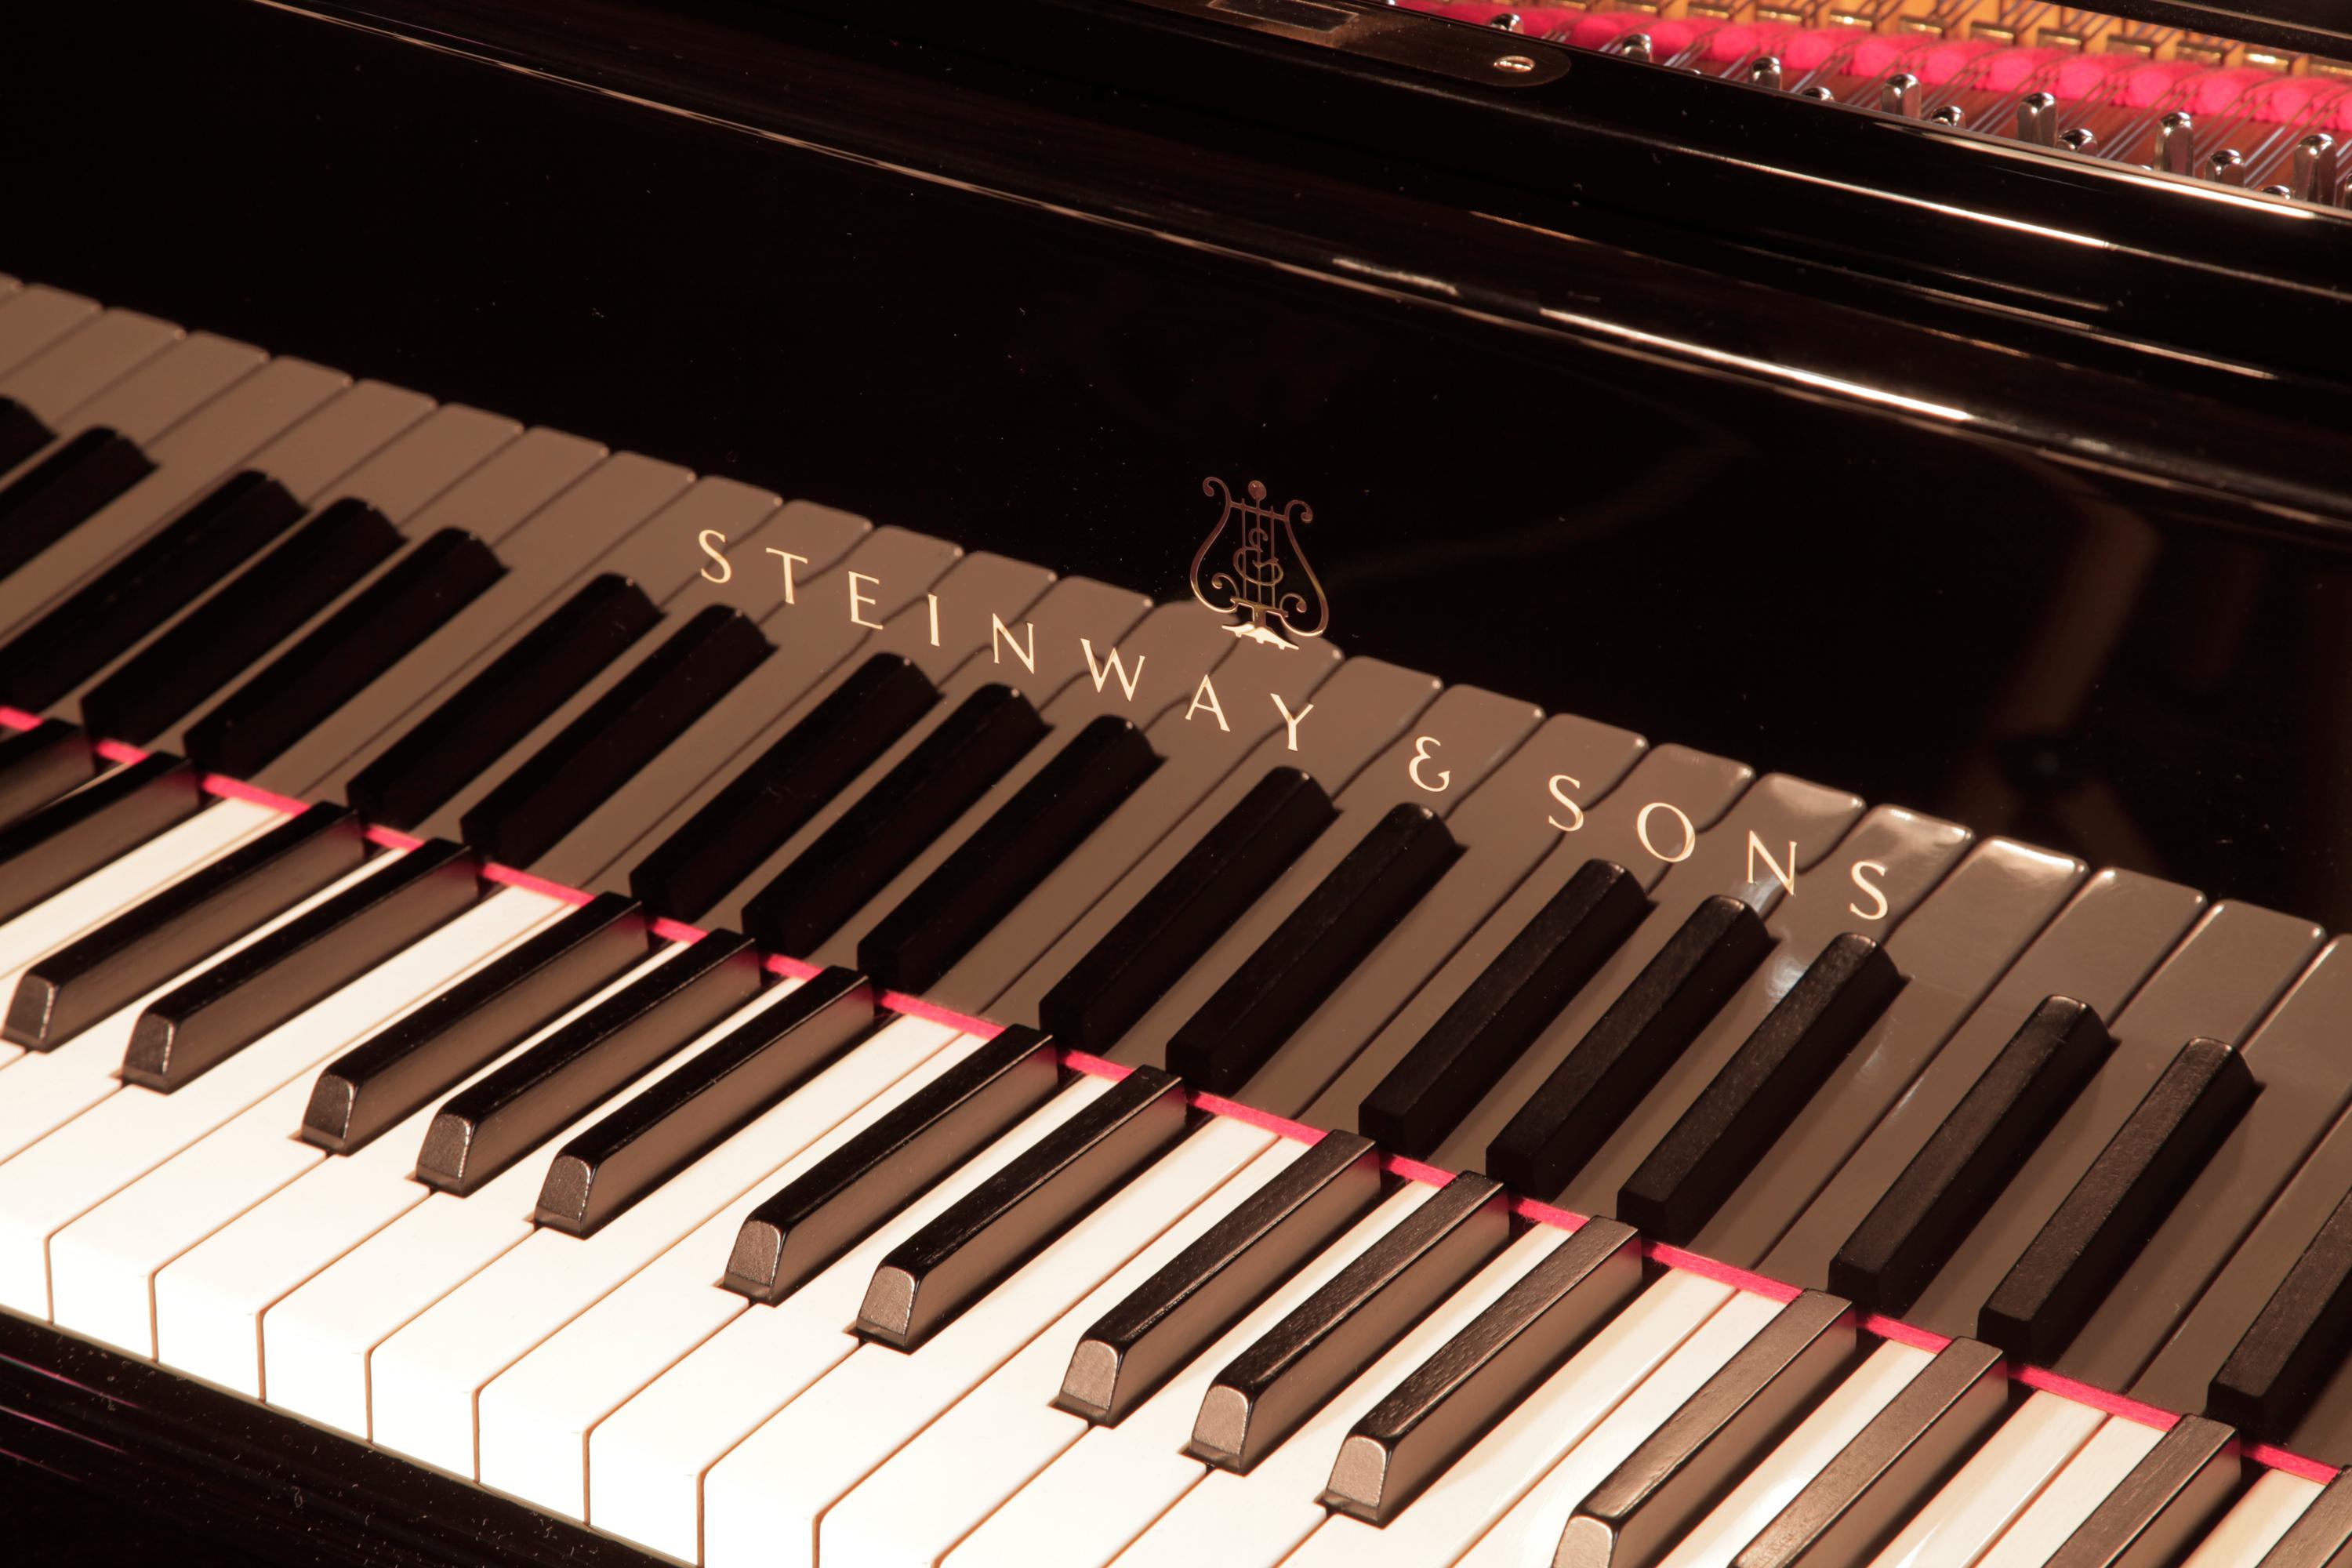 Piano à queue Steinway modèle O reconstruit en 1969, avec caisse noire et pieds en bêche. Le piano dispose d'un clavier de 88 notes et d'une lyre à deux pédales. 
La baguette d'étai pour le couvercle du piano est dotée d'un étai plus court et